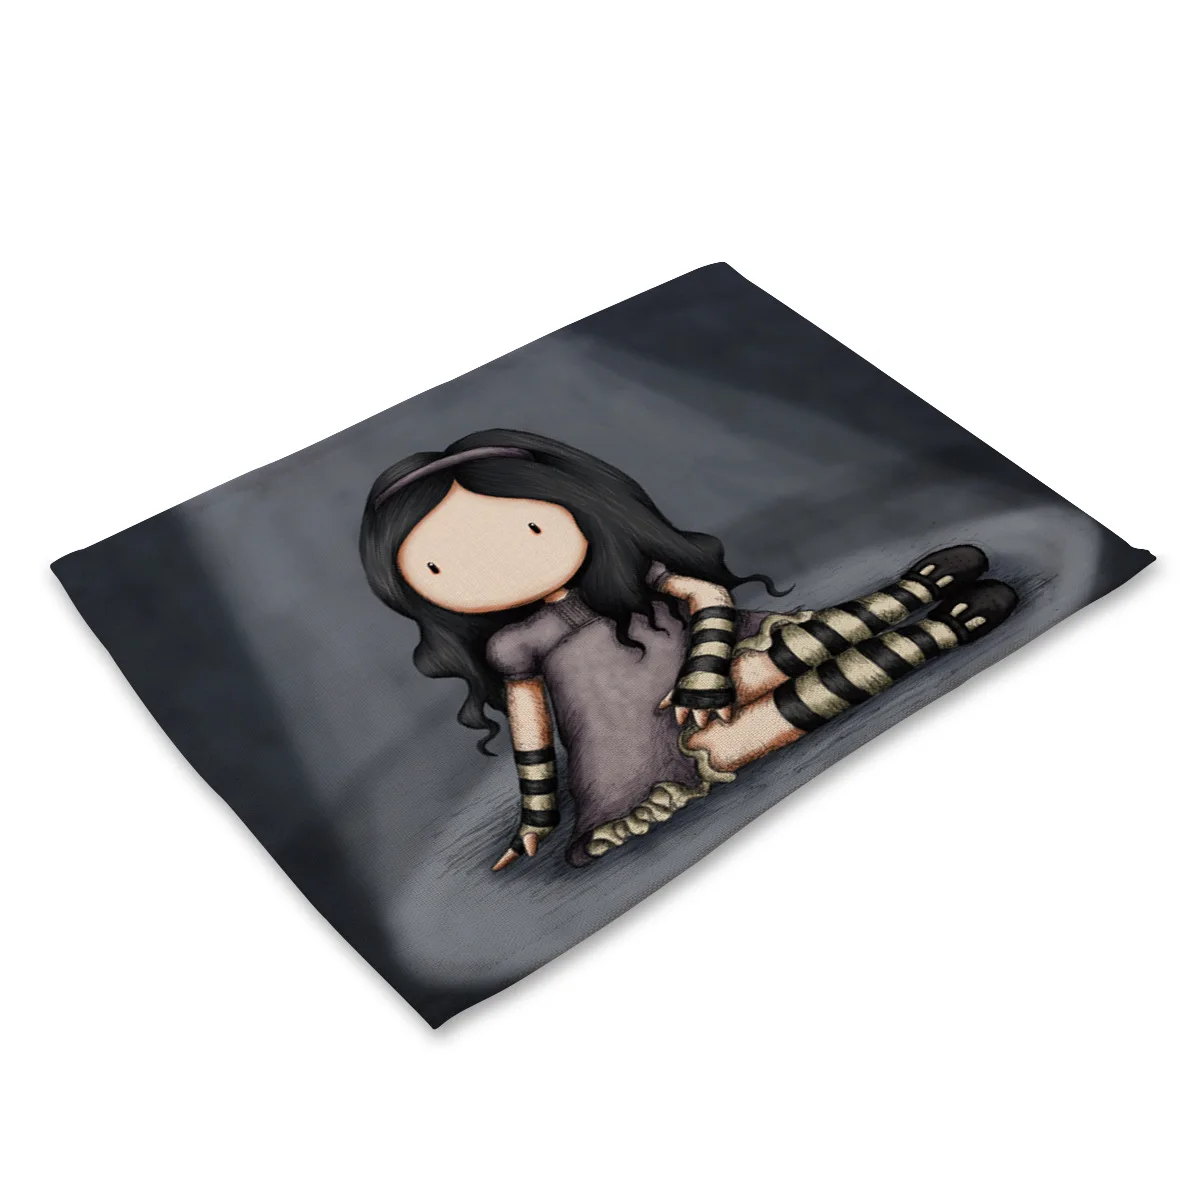 Горячая хлопковая и льняная ткань Изолированная подстилка в стиле вестерна одинокая девушка с длинными волосами кукольная посуда столик-мат салфетки - Цвет: MC0023-9